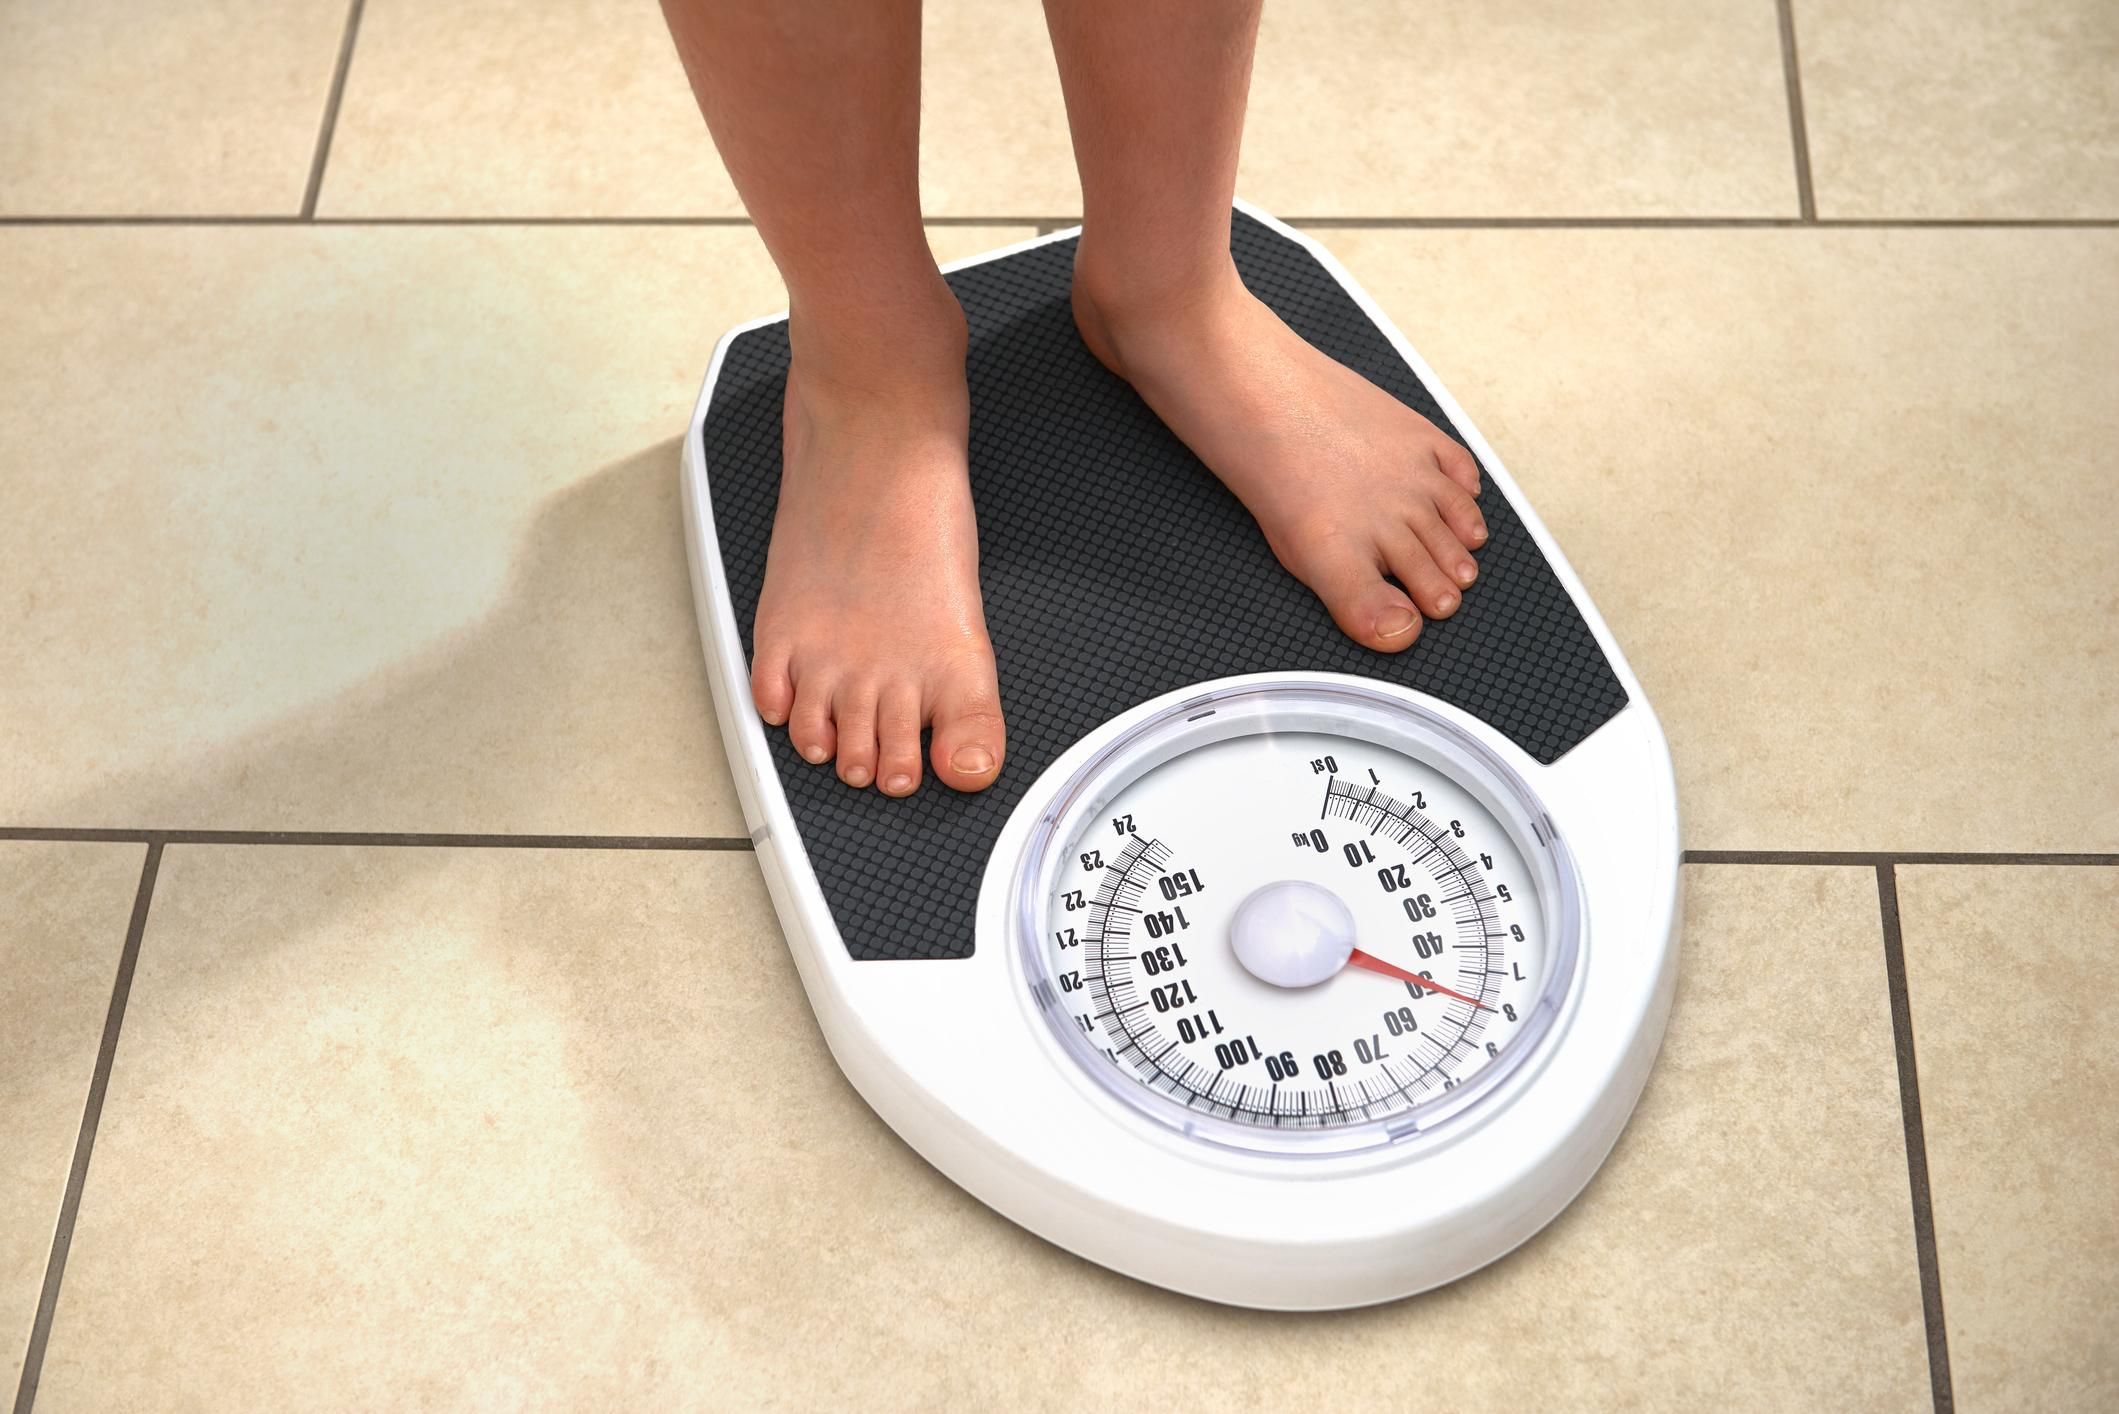 Міжнародний день без дієт: чим небезпечні екстремальні методи втрати ваги